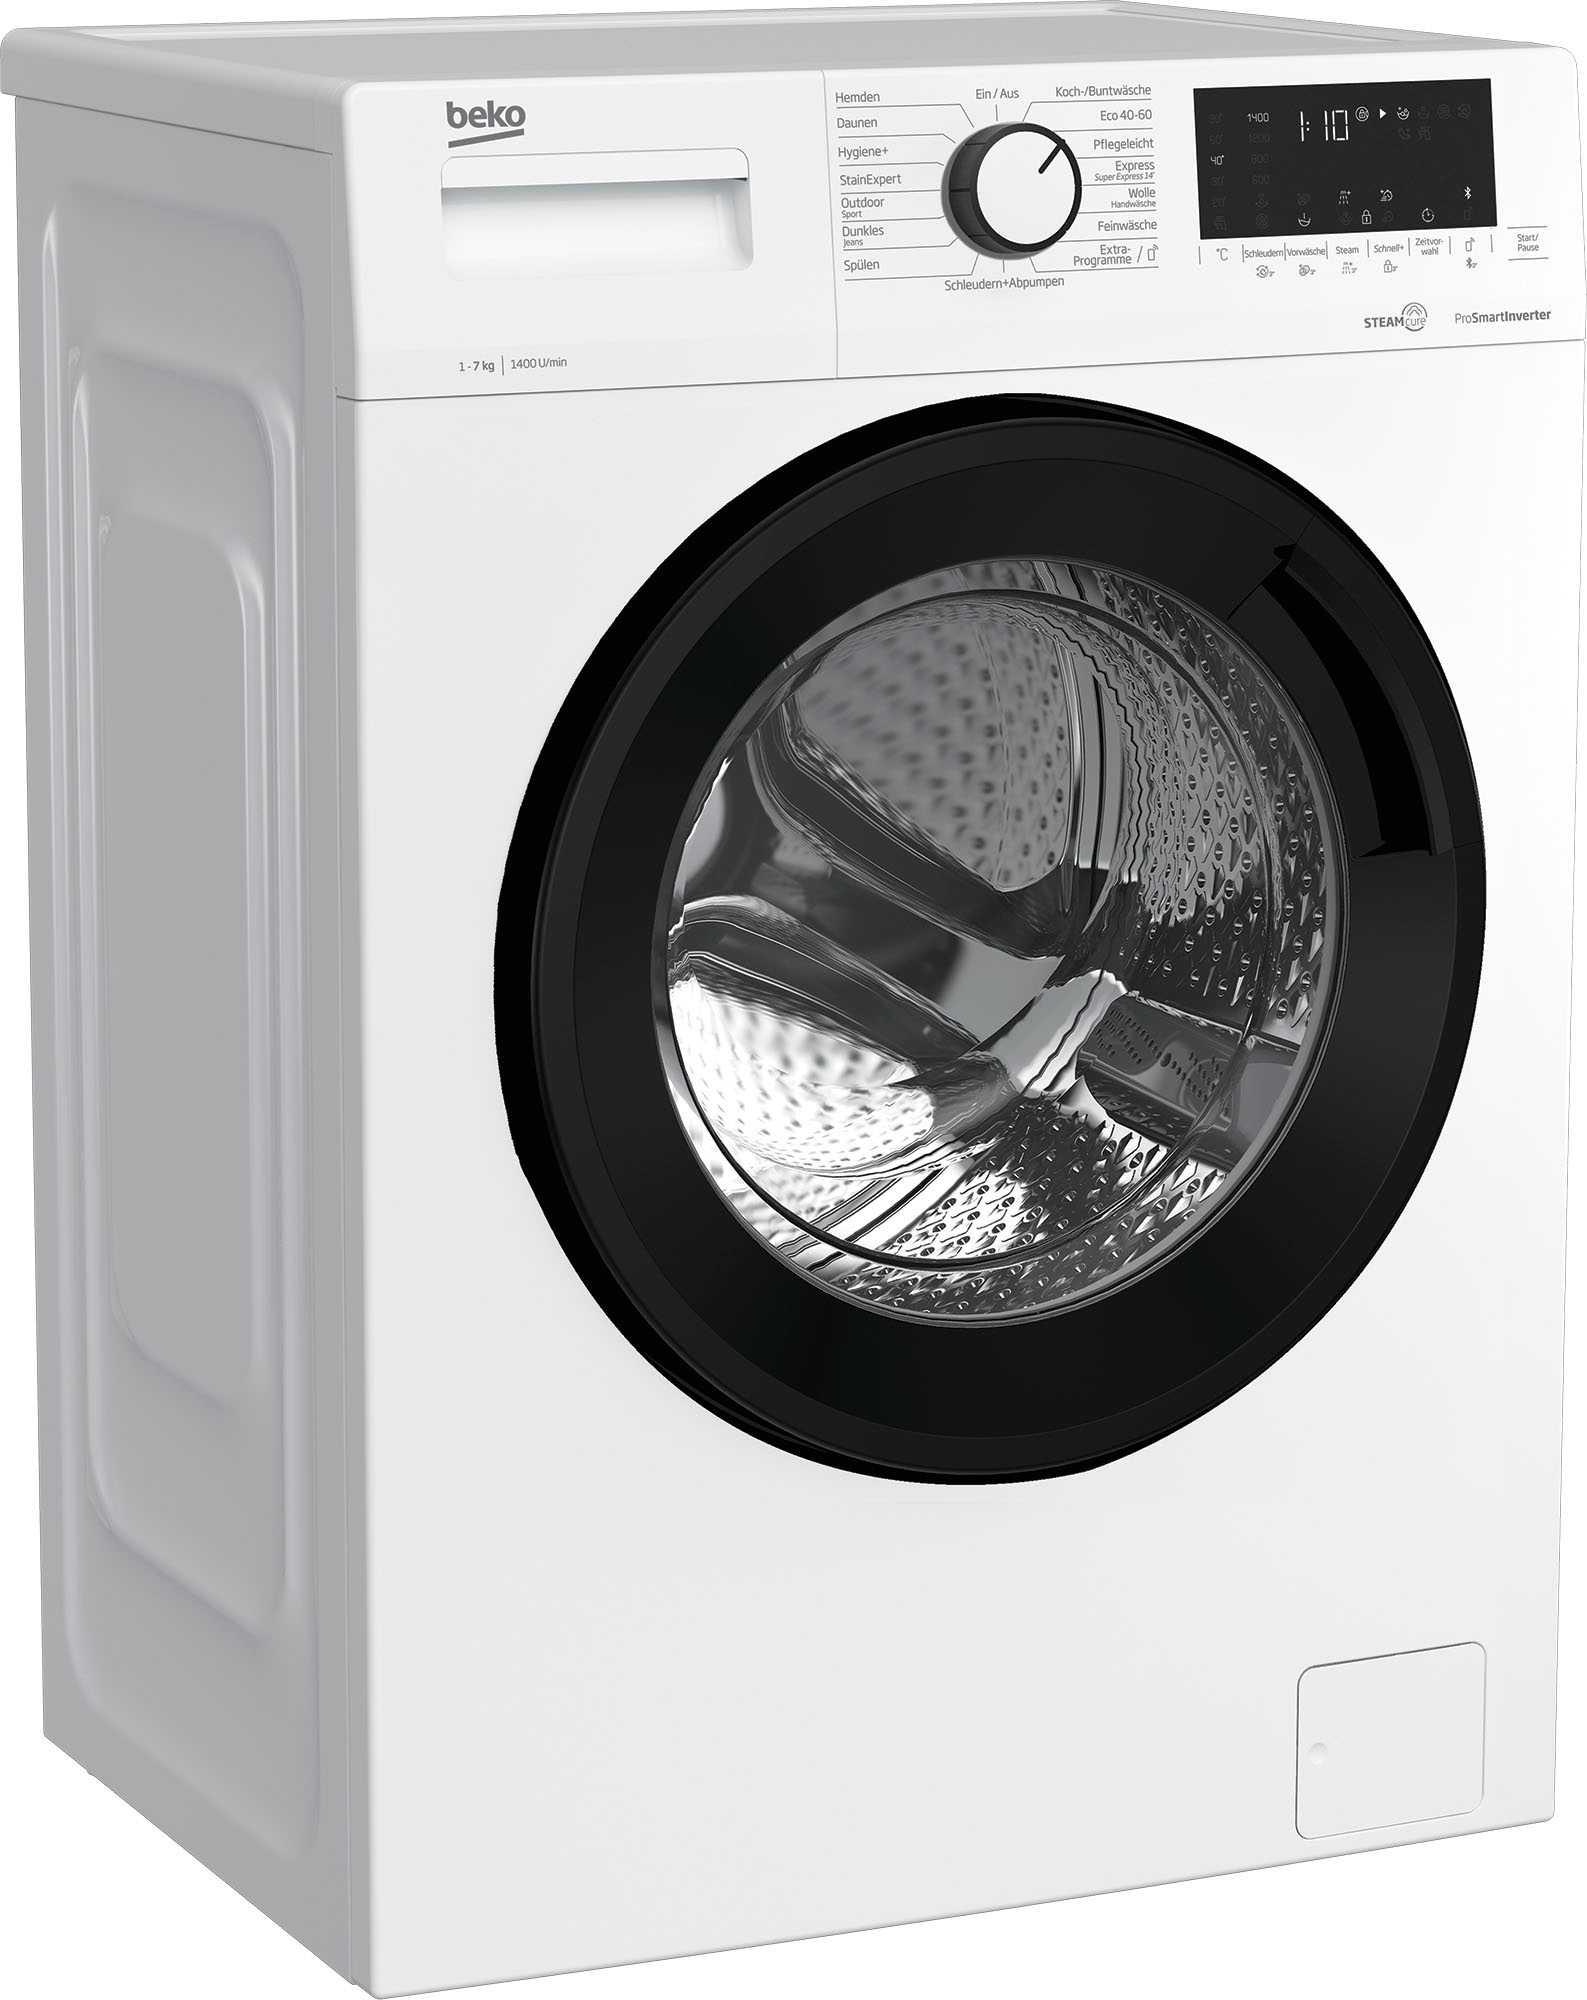 BEKO Waschmaschine, b300, B3WFU58415W1, 8 kg, 1400 U/min, SteamCure - 99%  allergenfrei mit 3 Jahren XXL Garantie